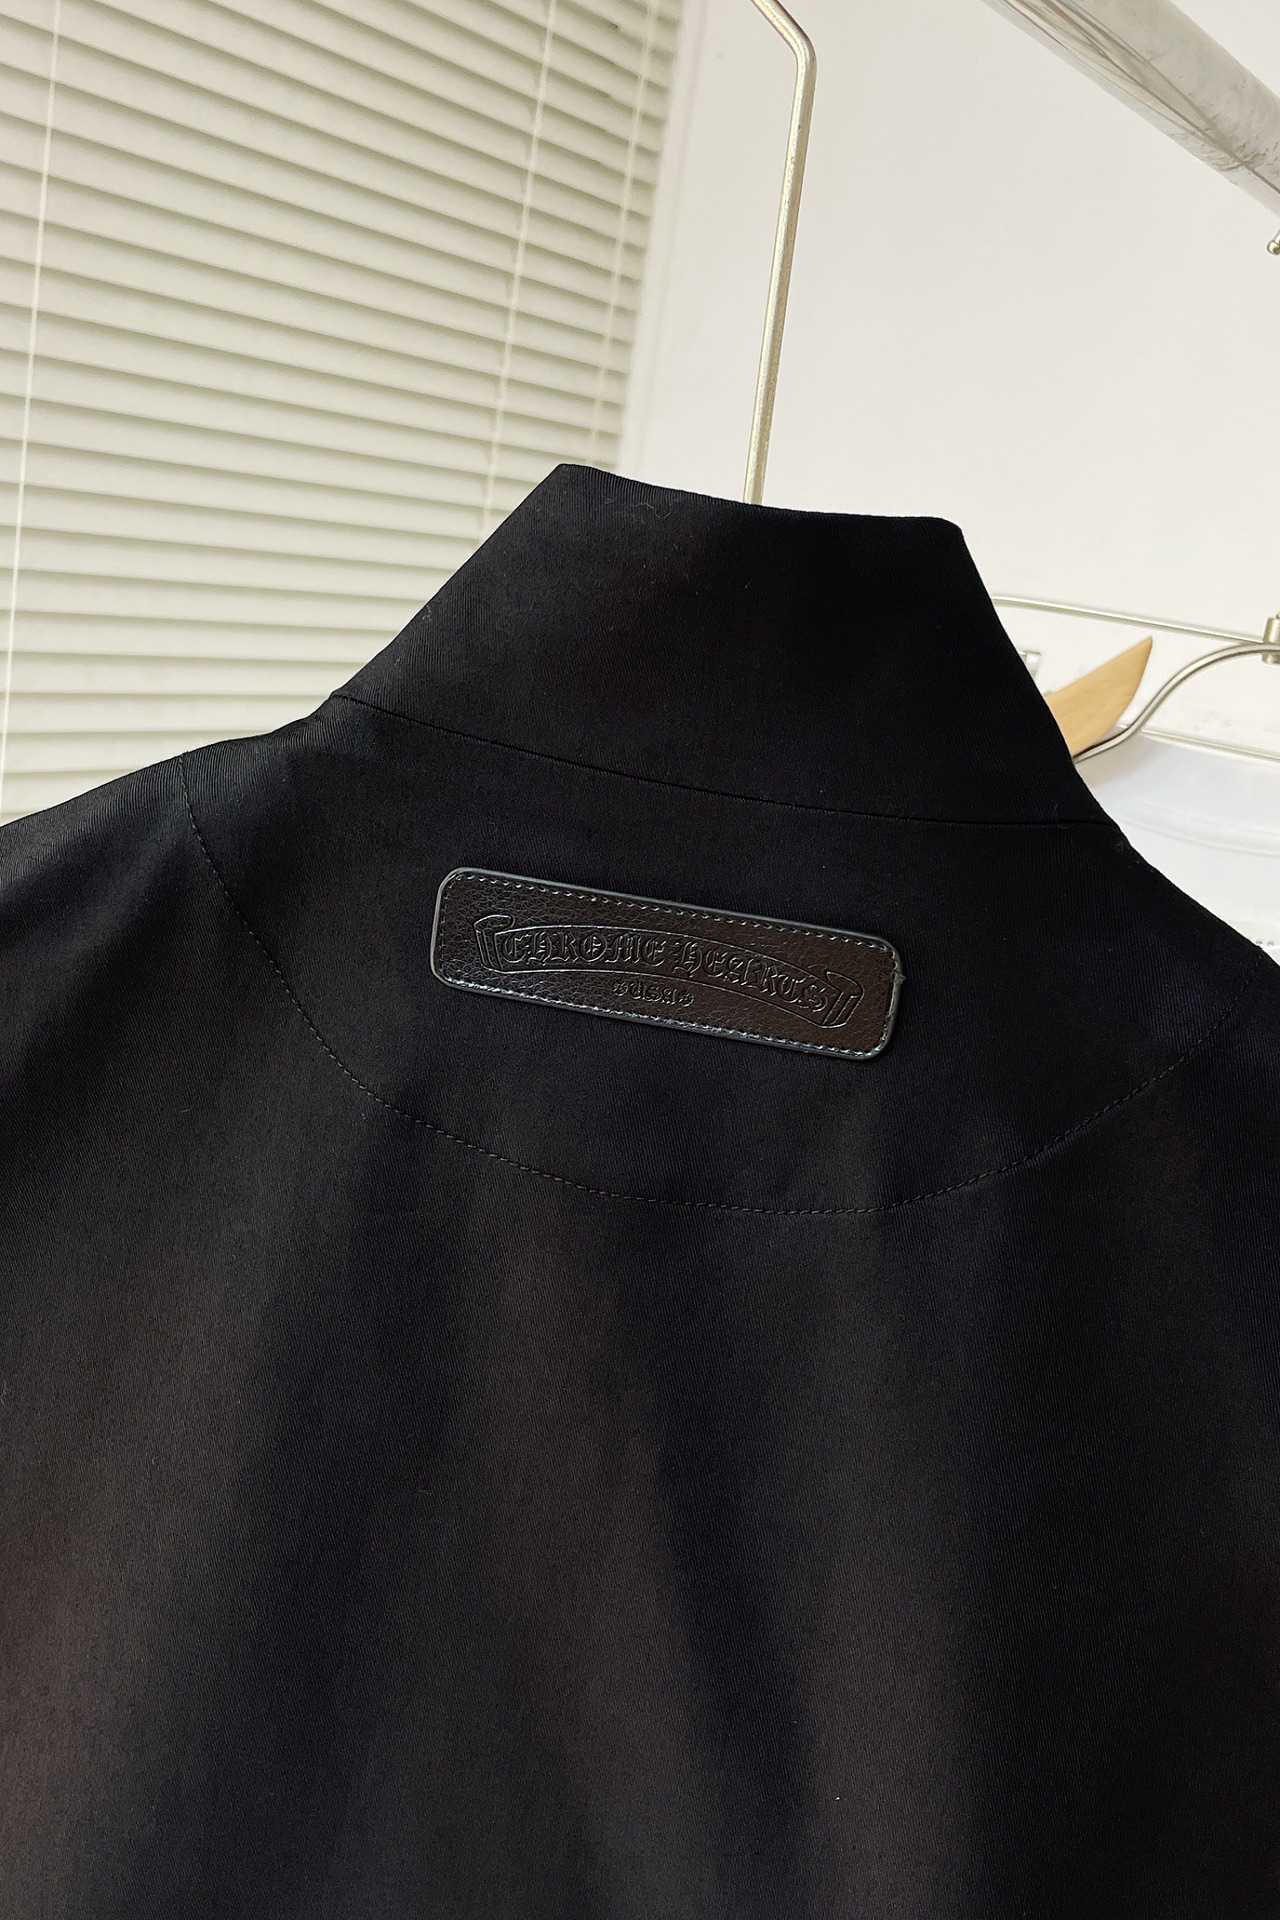 お得100%新品 クロムハーツ アウターｎ級品 トップス 柔らかい ベルト 動きやすい 薄いジャケット ブラック_5